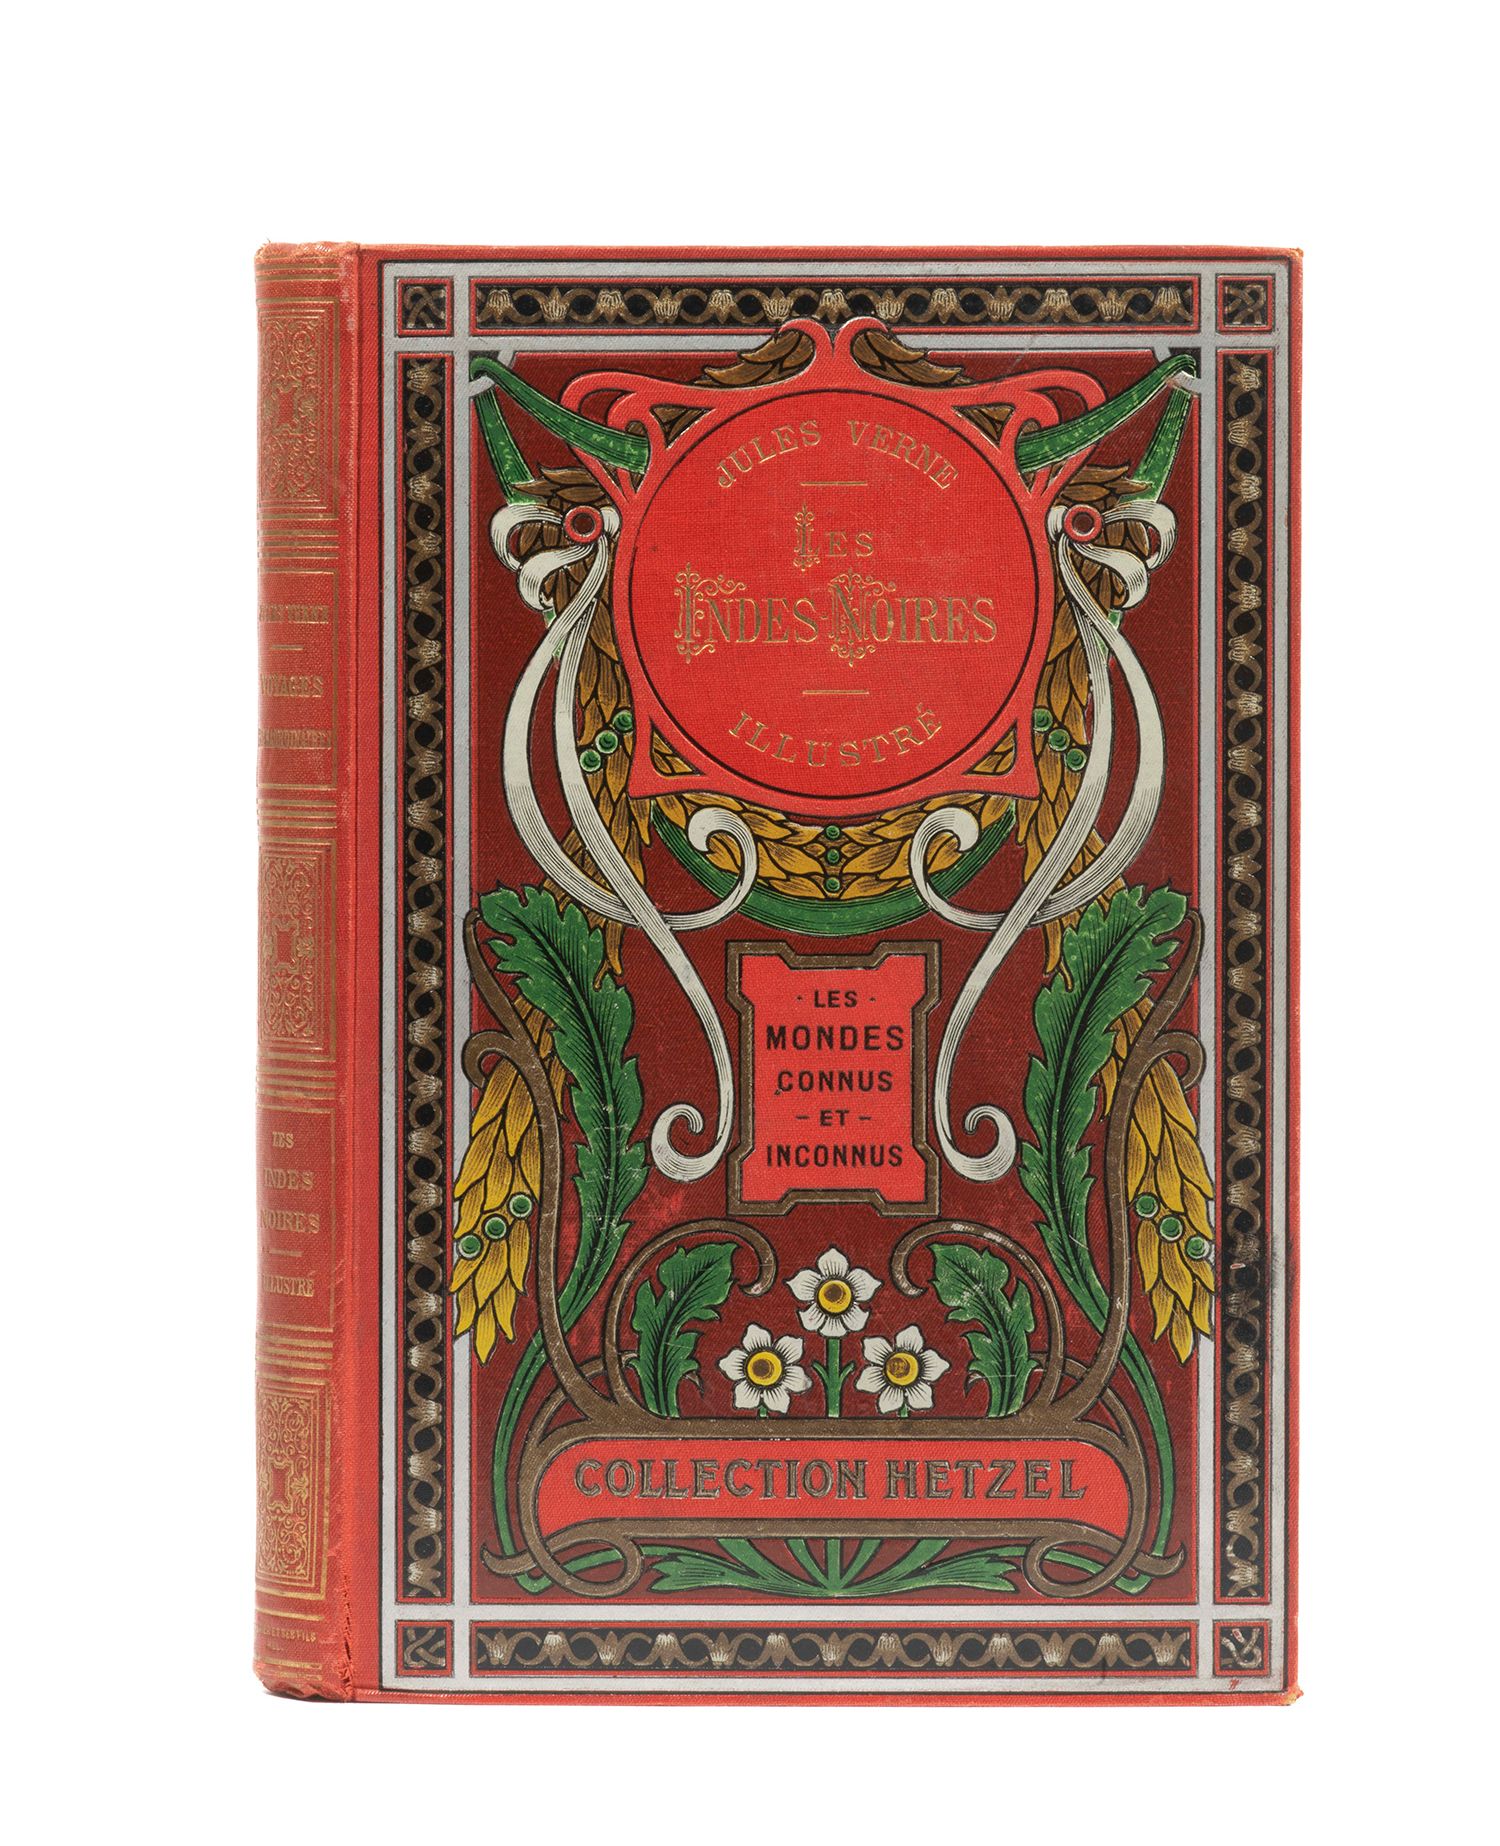 Null 儒勒-凡尔纳的《黑印度》。菲拉特的插图。Hetzel收藏品，巴黎，sd（约1908年）。
大型单行本8页。多色出版商板" aux feuilles d&hellip;